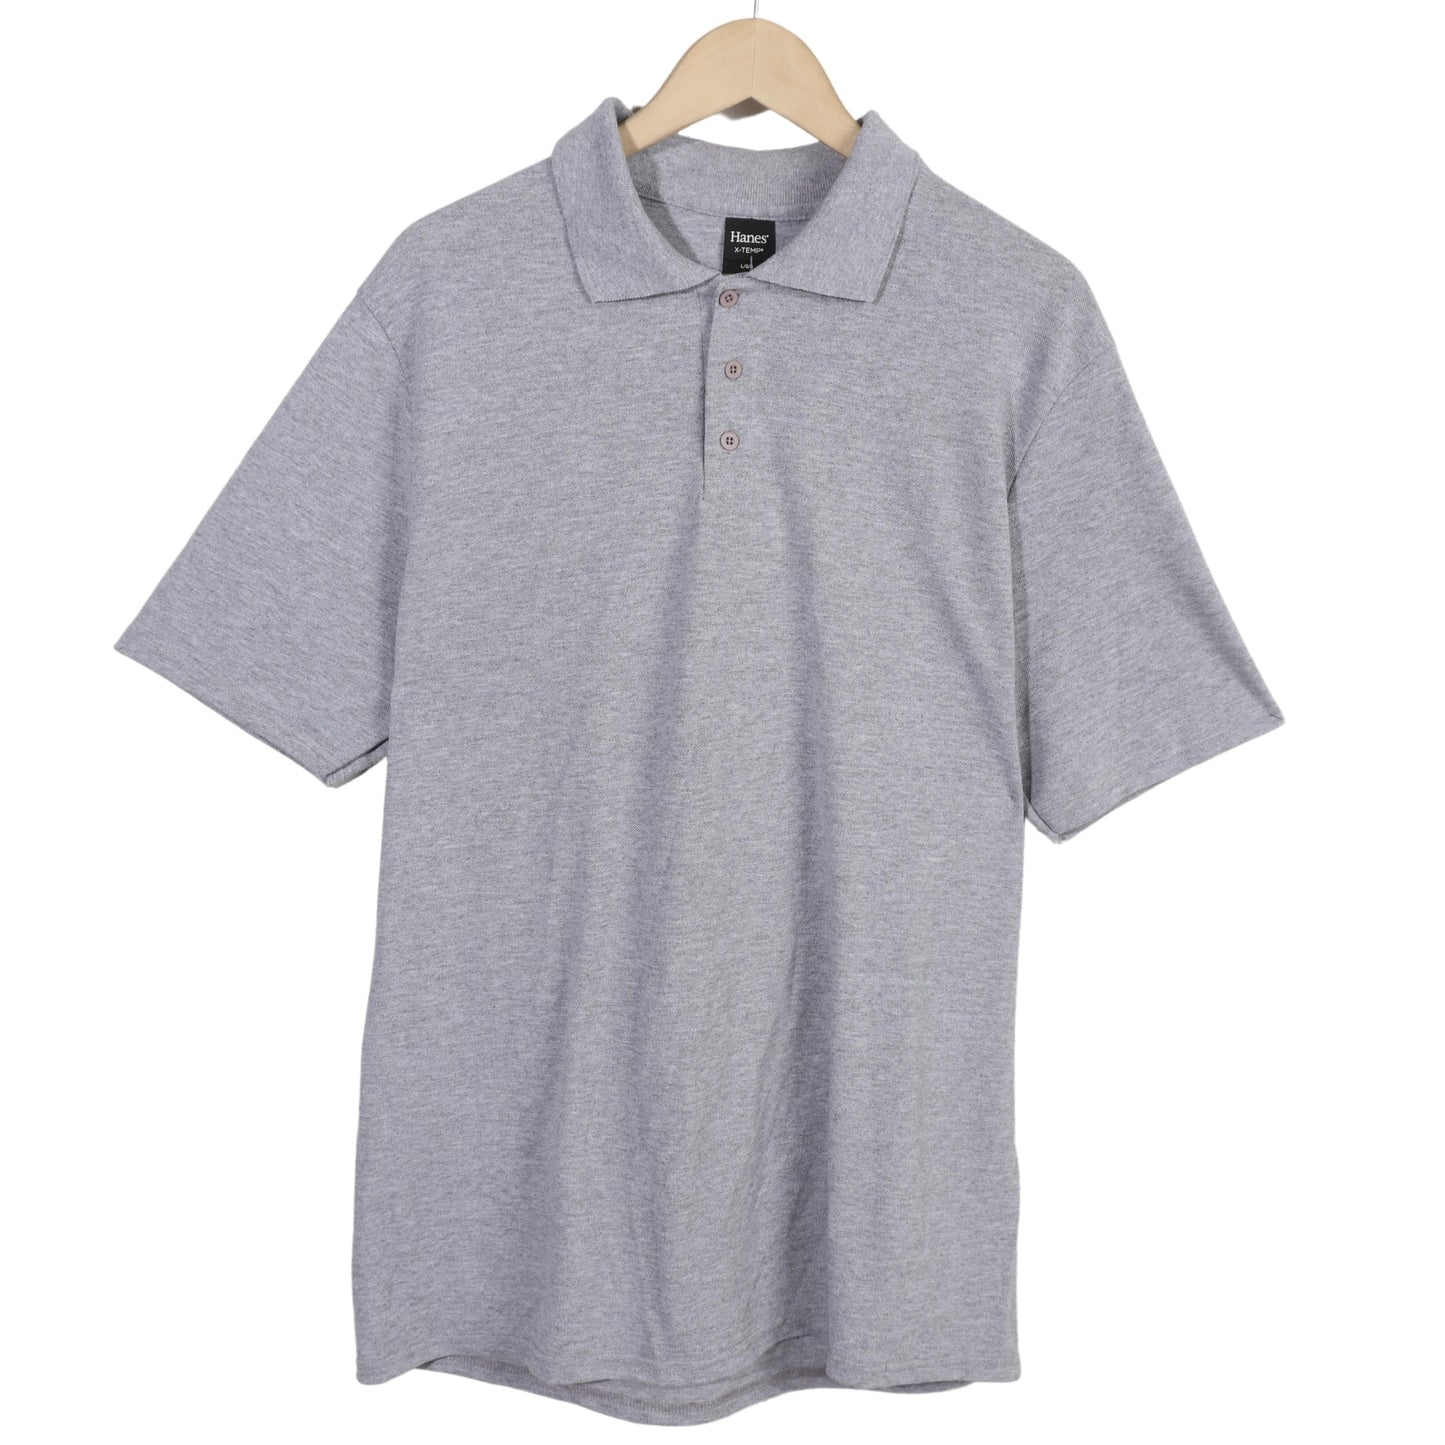 HANES Mens Tops L / Grey HANES - Casual T-Shirts